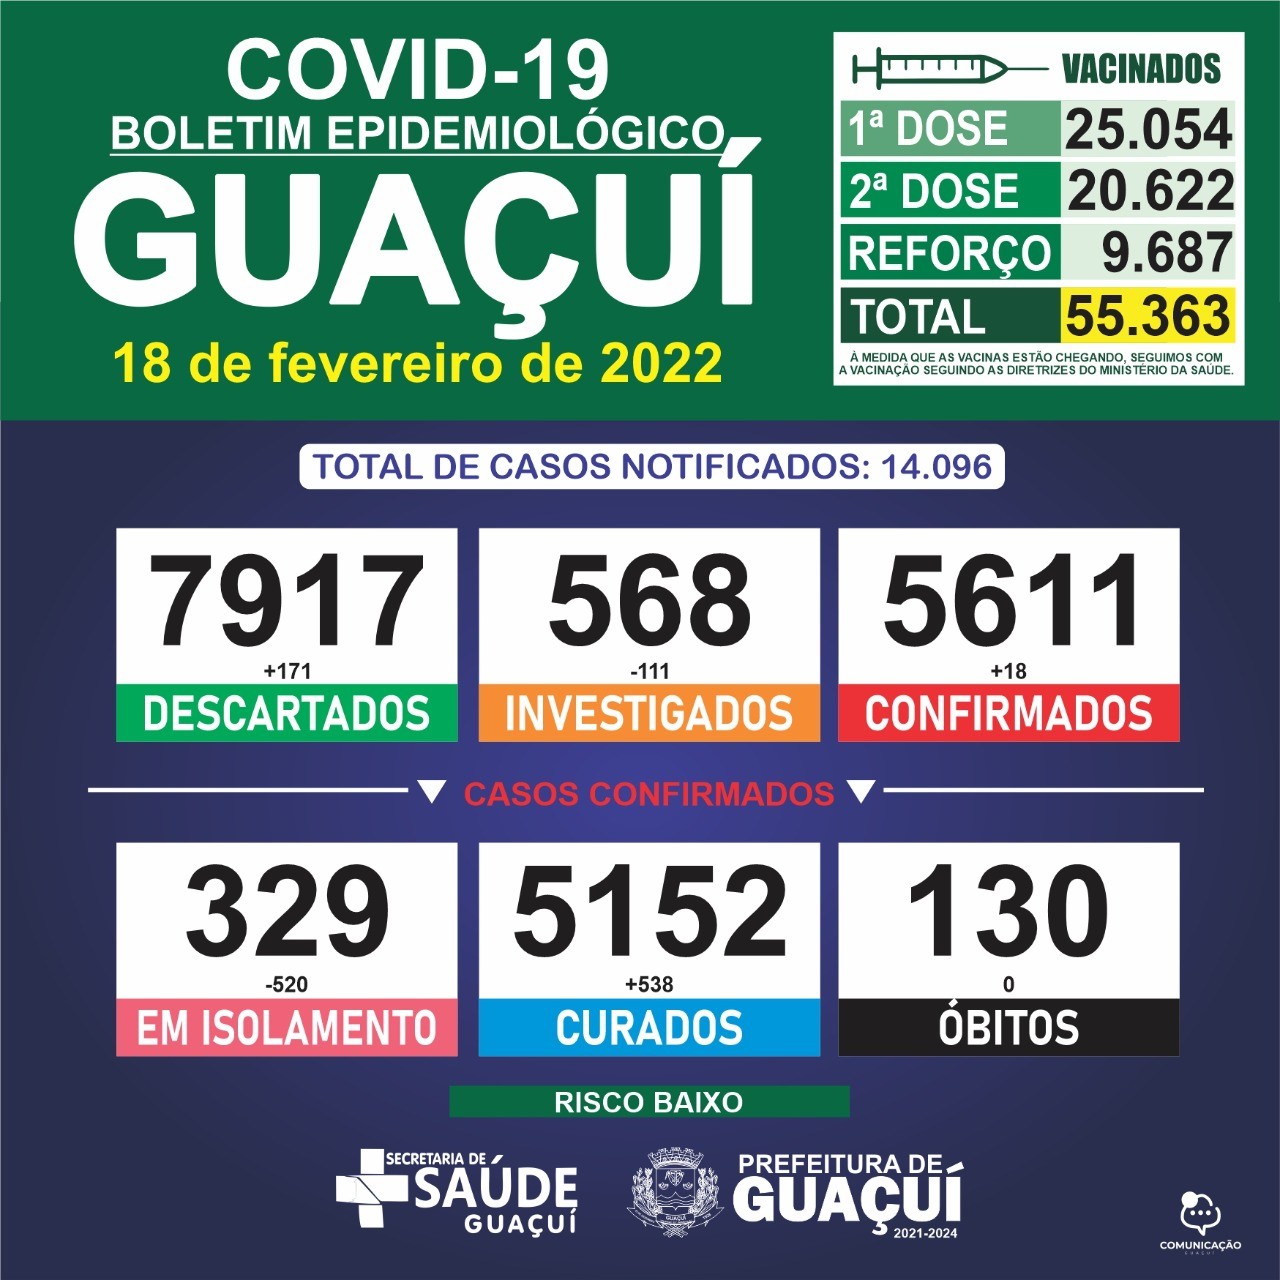 Boletim Epidemiológico 18/02/2022: Guaçuí registra 18 casos confirmados e 538 curados